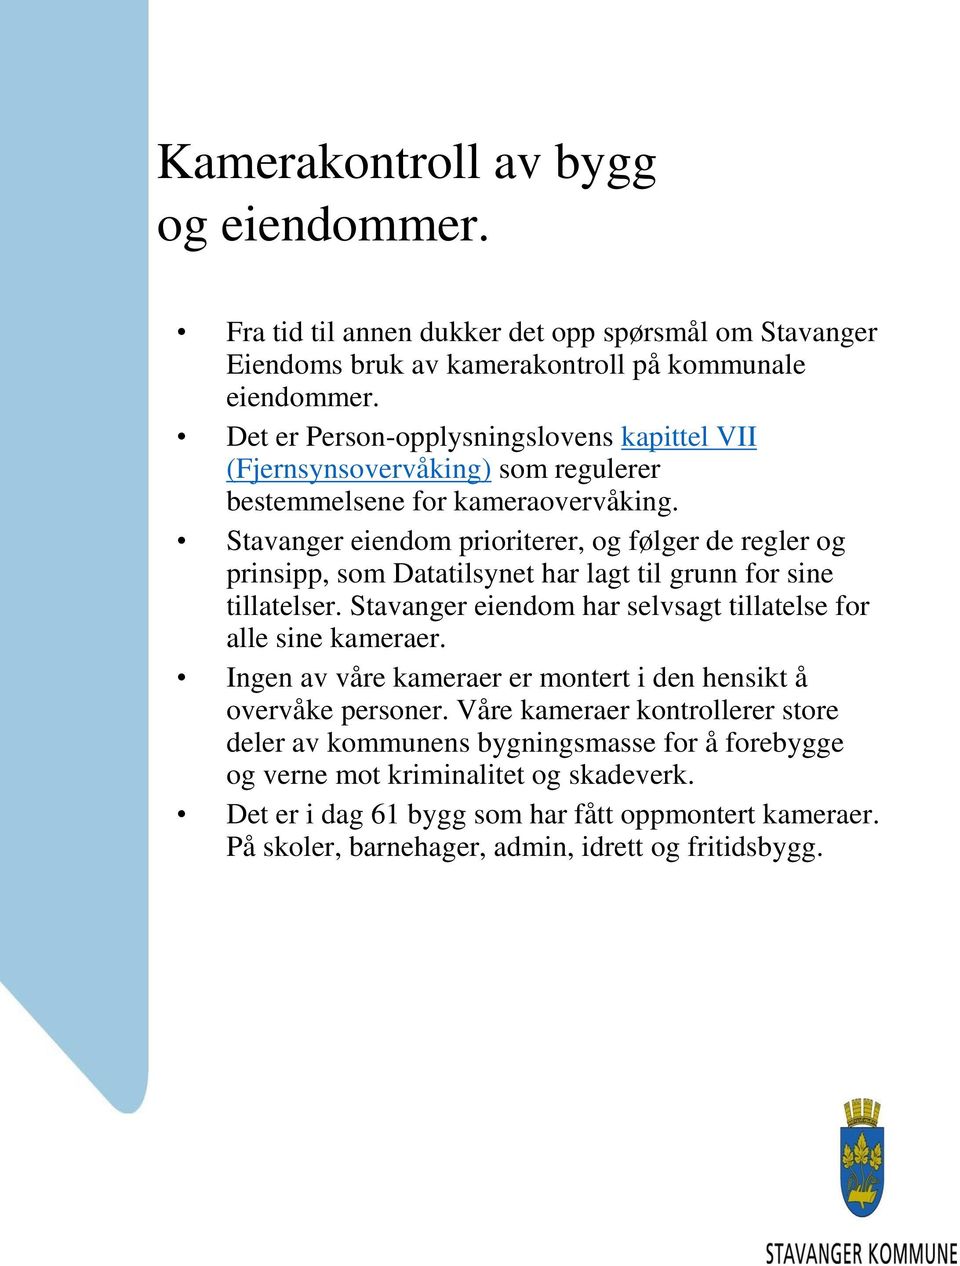 Stavanger eiendom prioriterer, og følger de regler og prinsipp, som Datatilsynet har lagt til grunn for sine tillatelser. Stavanger eiendom har selvsagt tillatelse for alle sine kameraer.